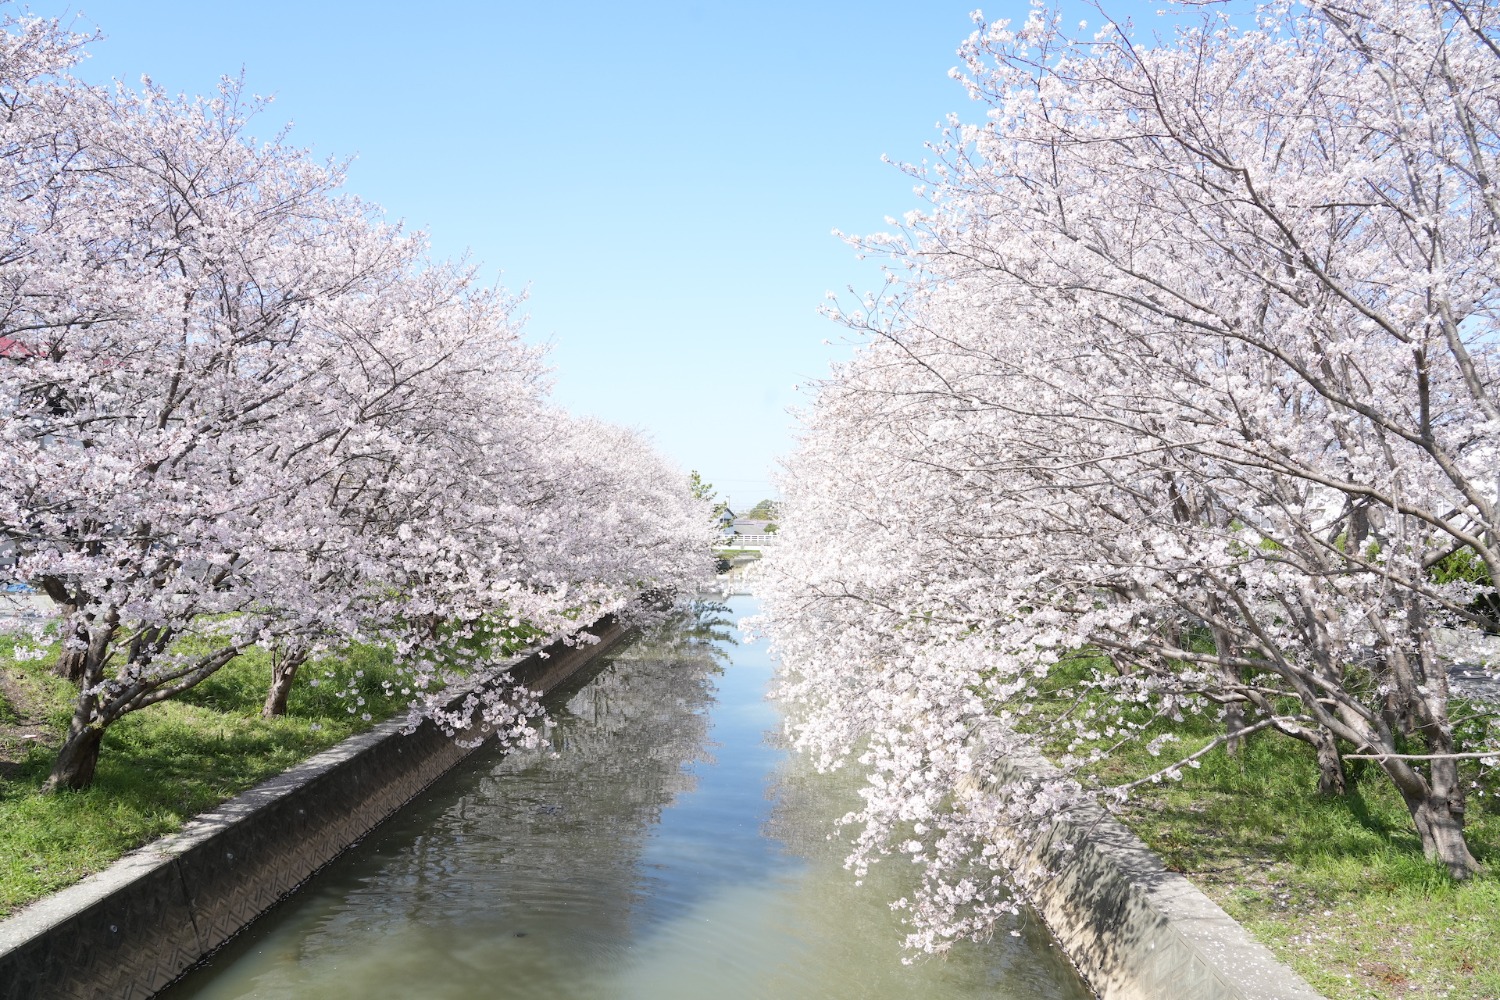 堂面川の桜の写真.JPG